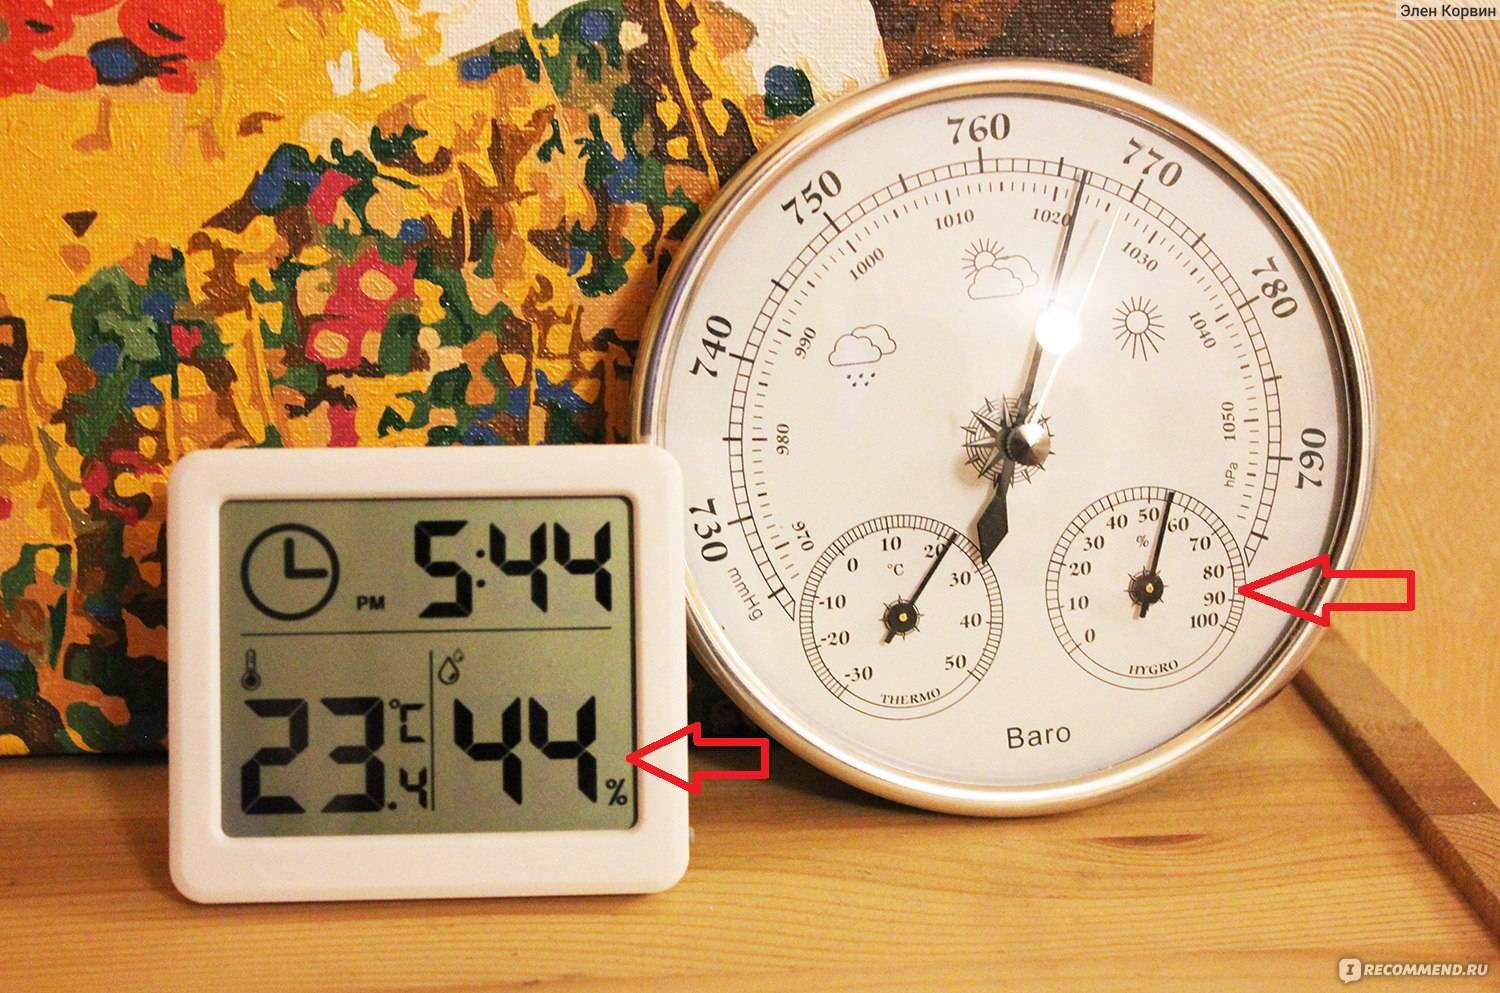 Гигрометры и термогигрометры - средства измерения влажности.